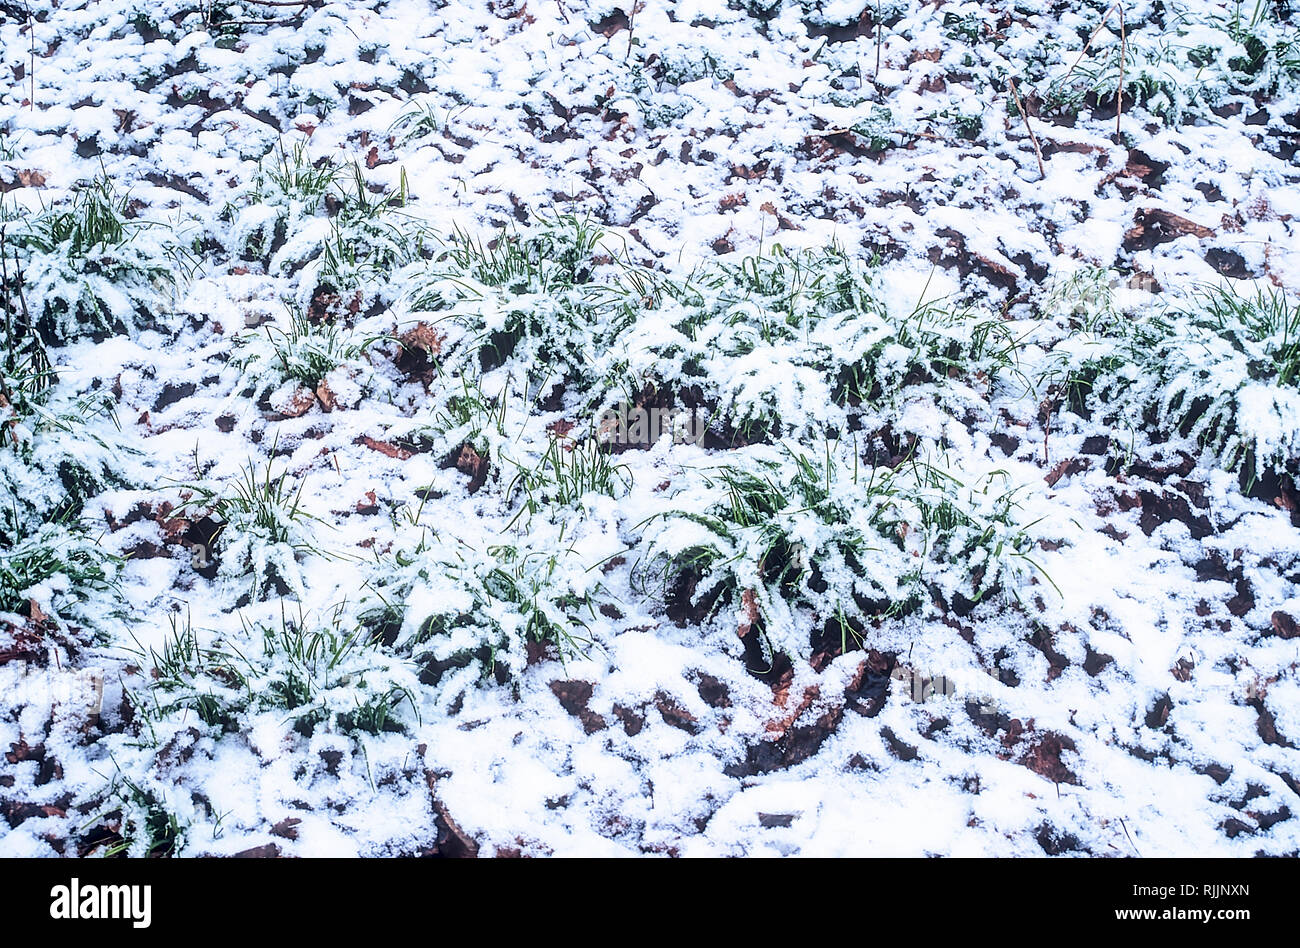 Neige au sol couvrant l'herbe et les feuilles mortes en Janvier Banque D'Images